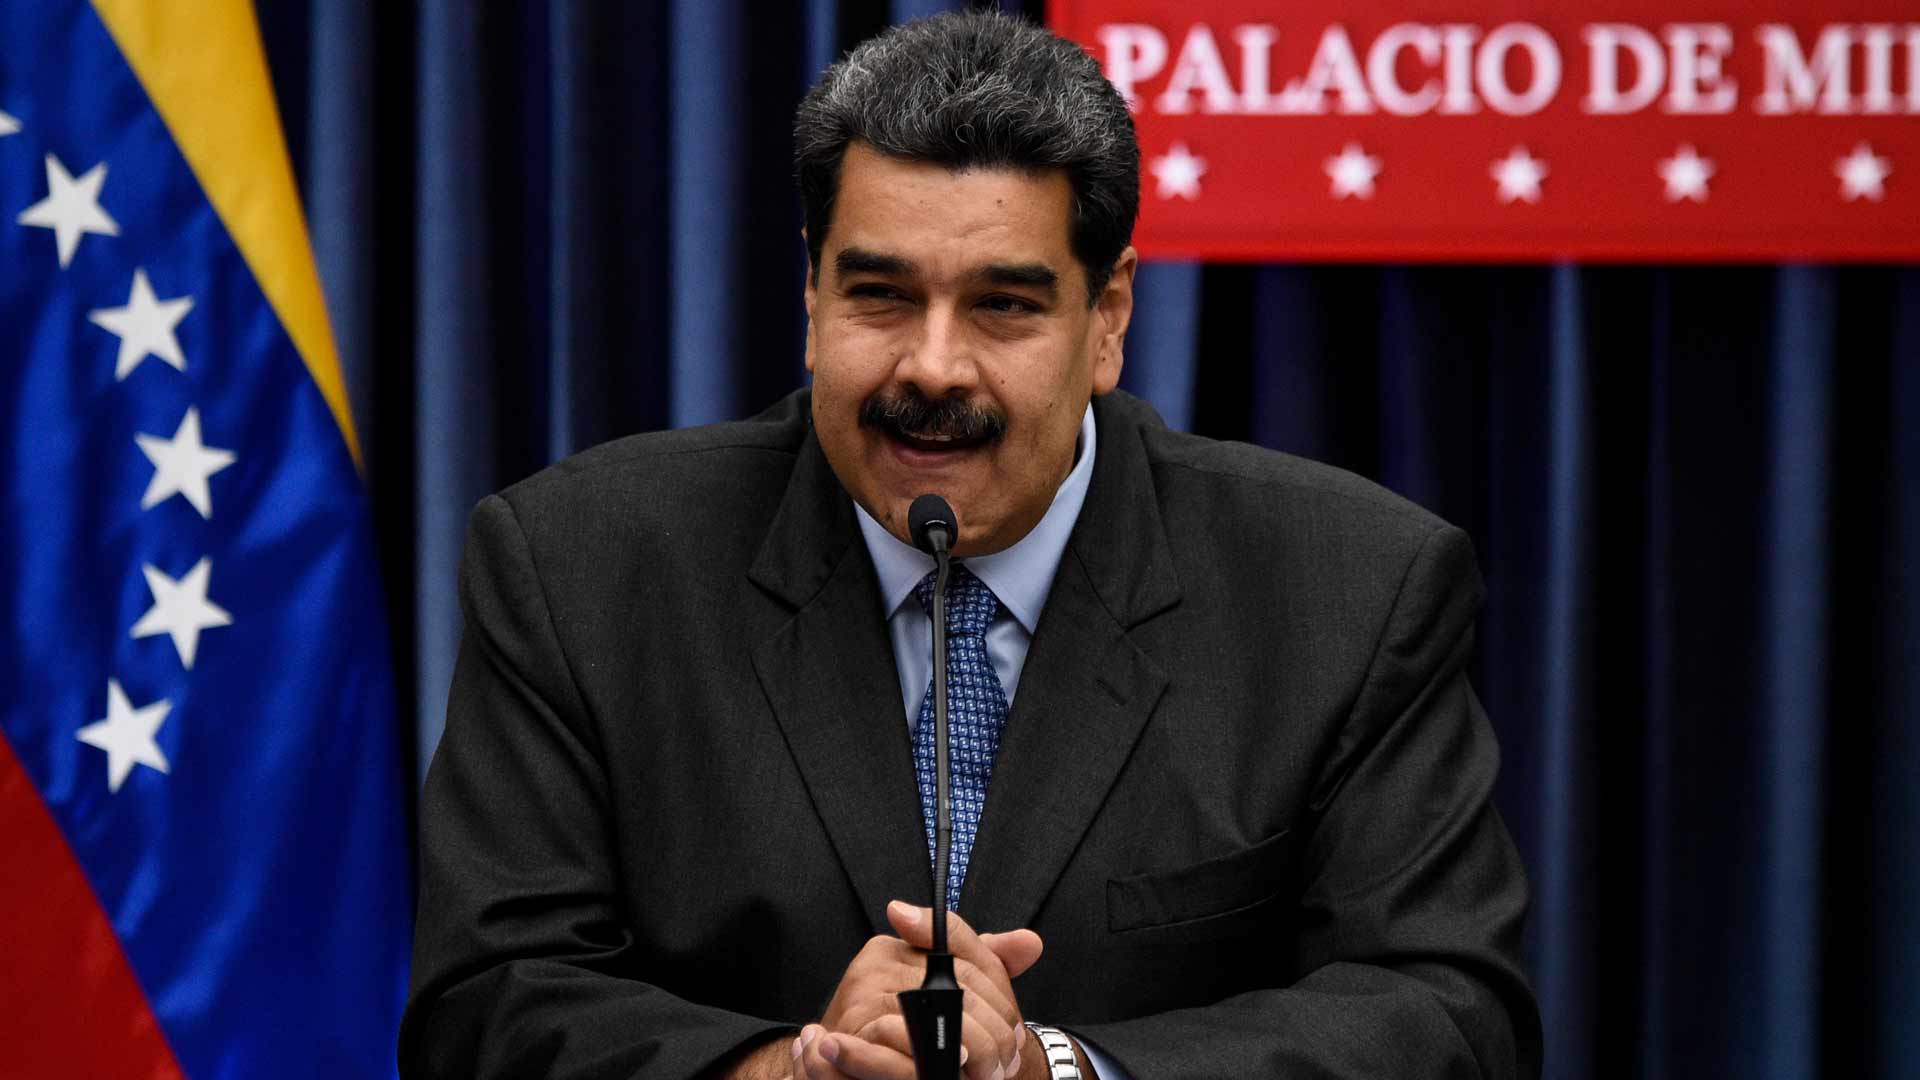 Maduro pedirá 500 millones de dólares a la ONU para repatriar a los emigrantes